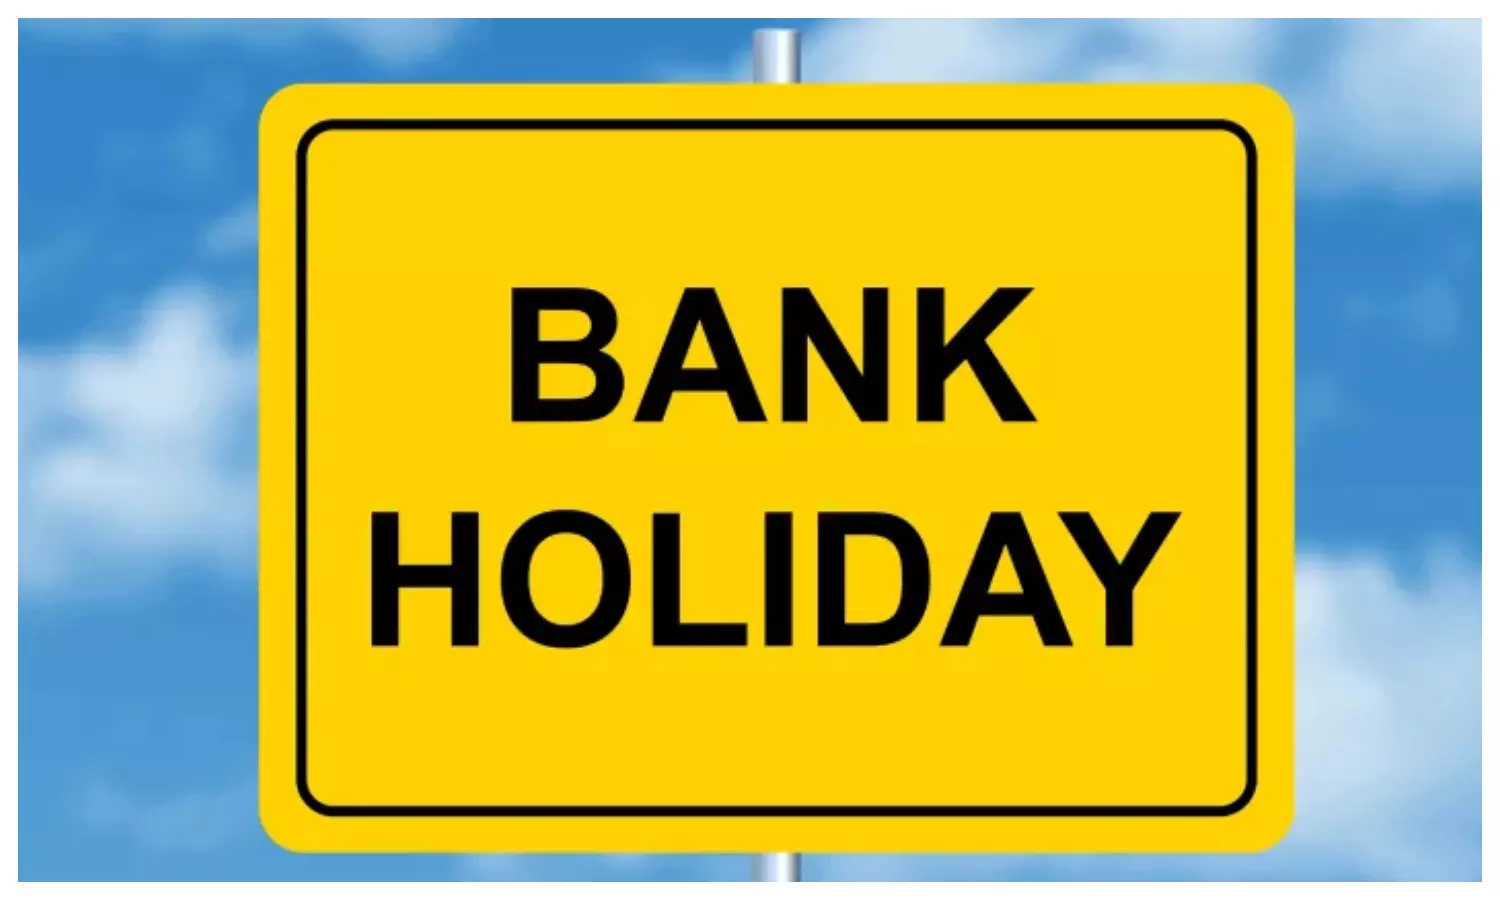 Bank Holiday List: जनवरी के आखिरी दिनों में कई दिन बैंक रहेंगे बंद, फटाफट निपटा लीजिए अपना बैंकिंग कामकाज